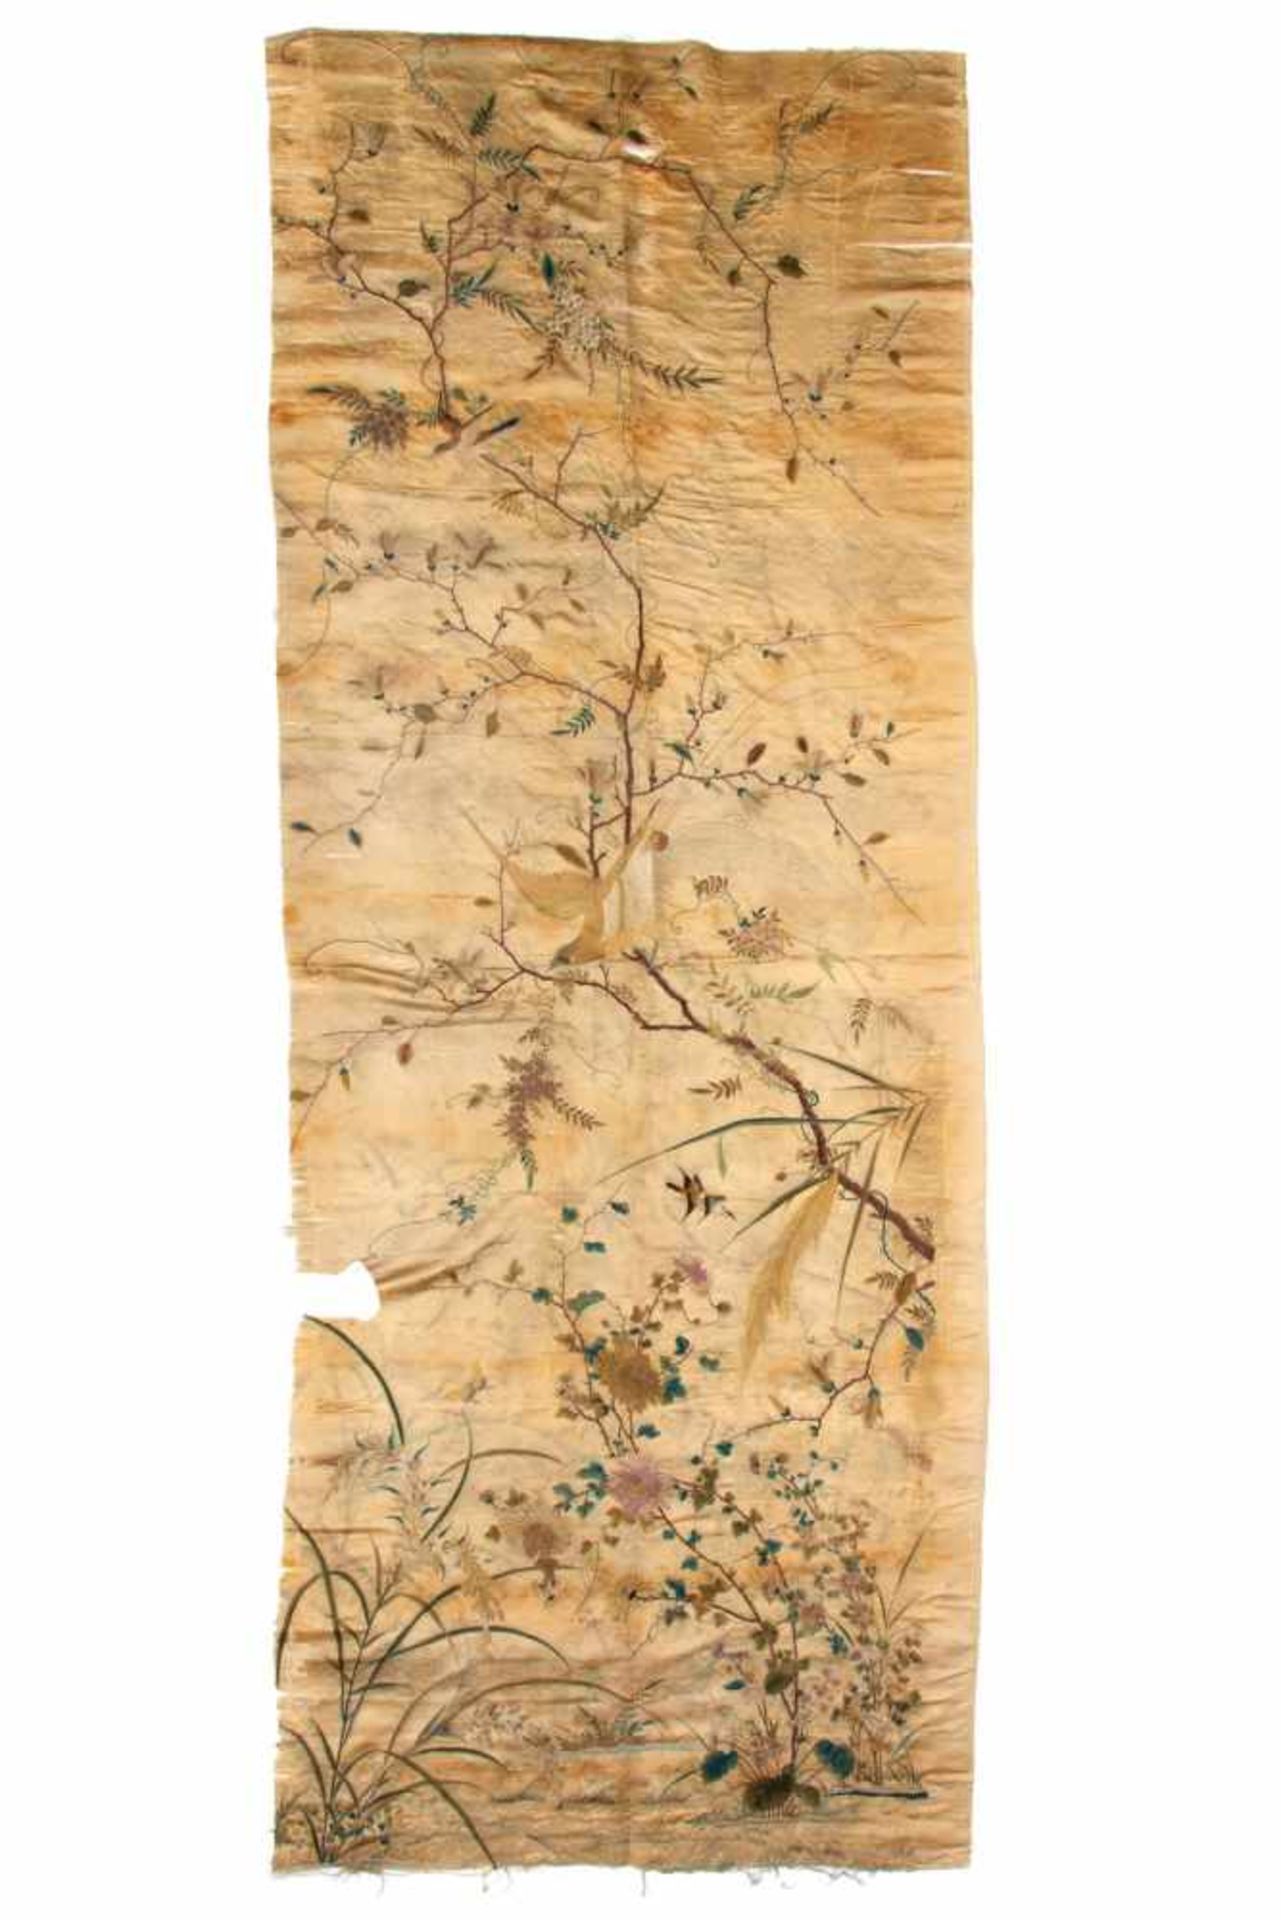 China, geborduurde zijde doek, ca 1900bloemen, vogels en vlinders in blauw en groene tinten, in